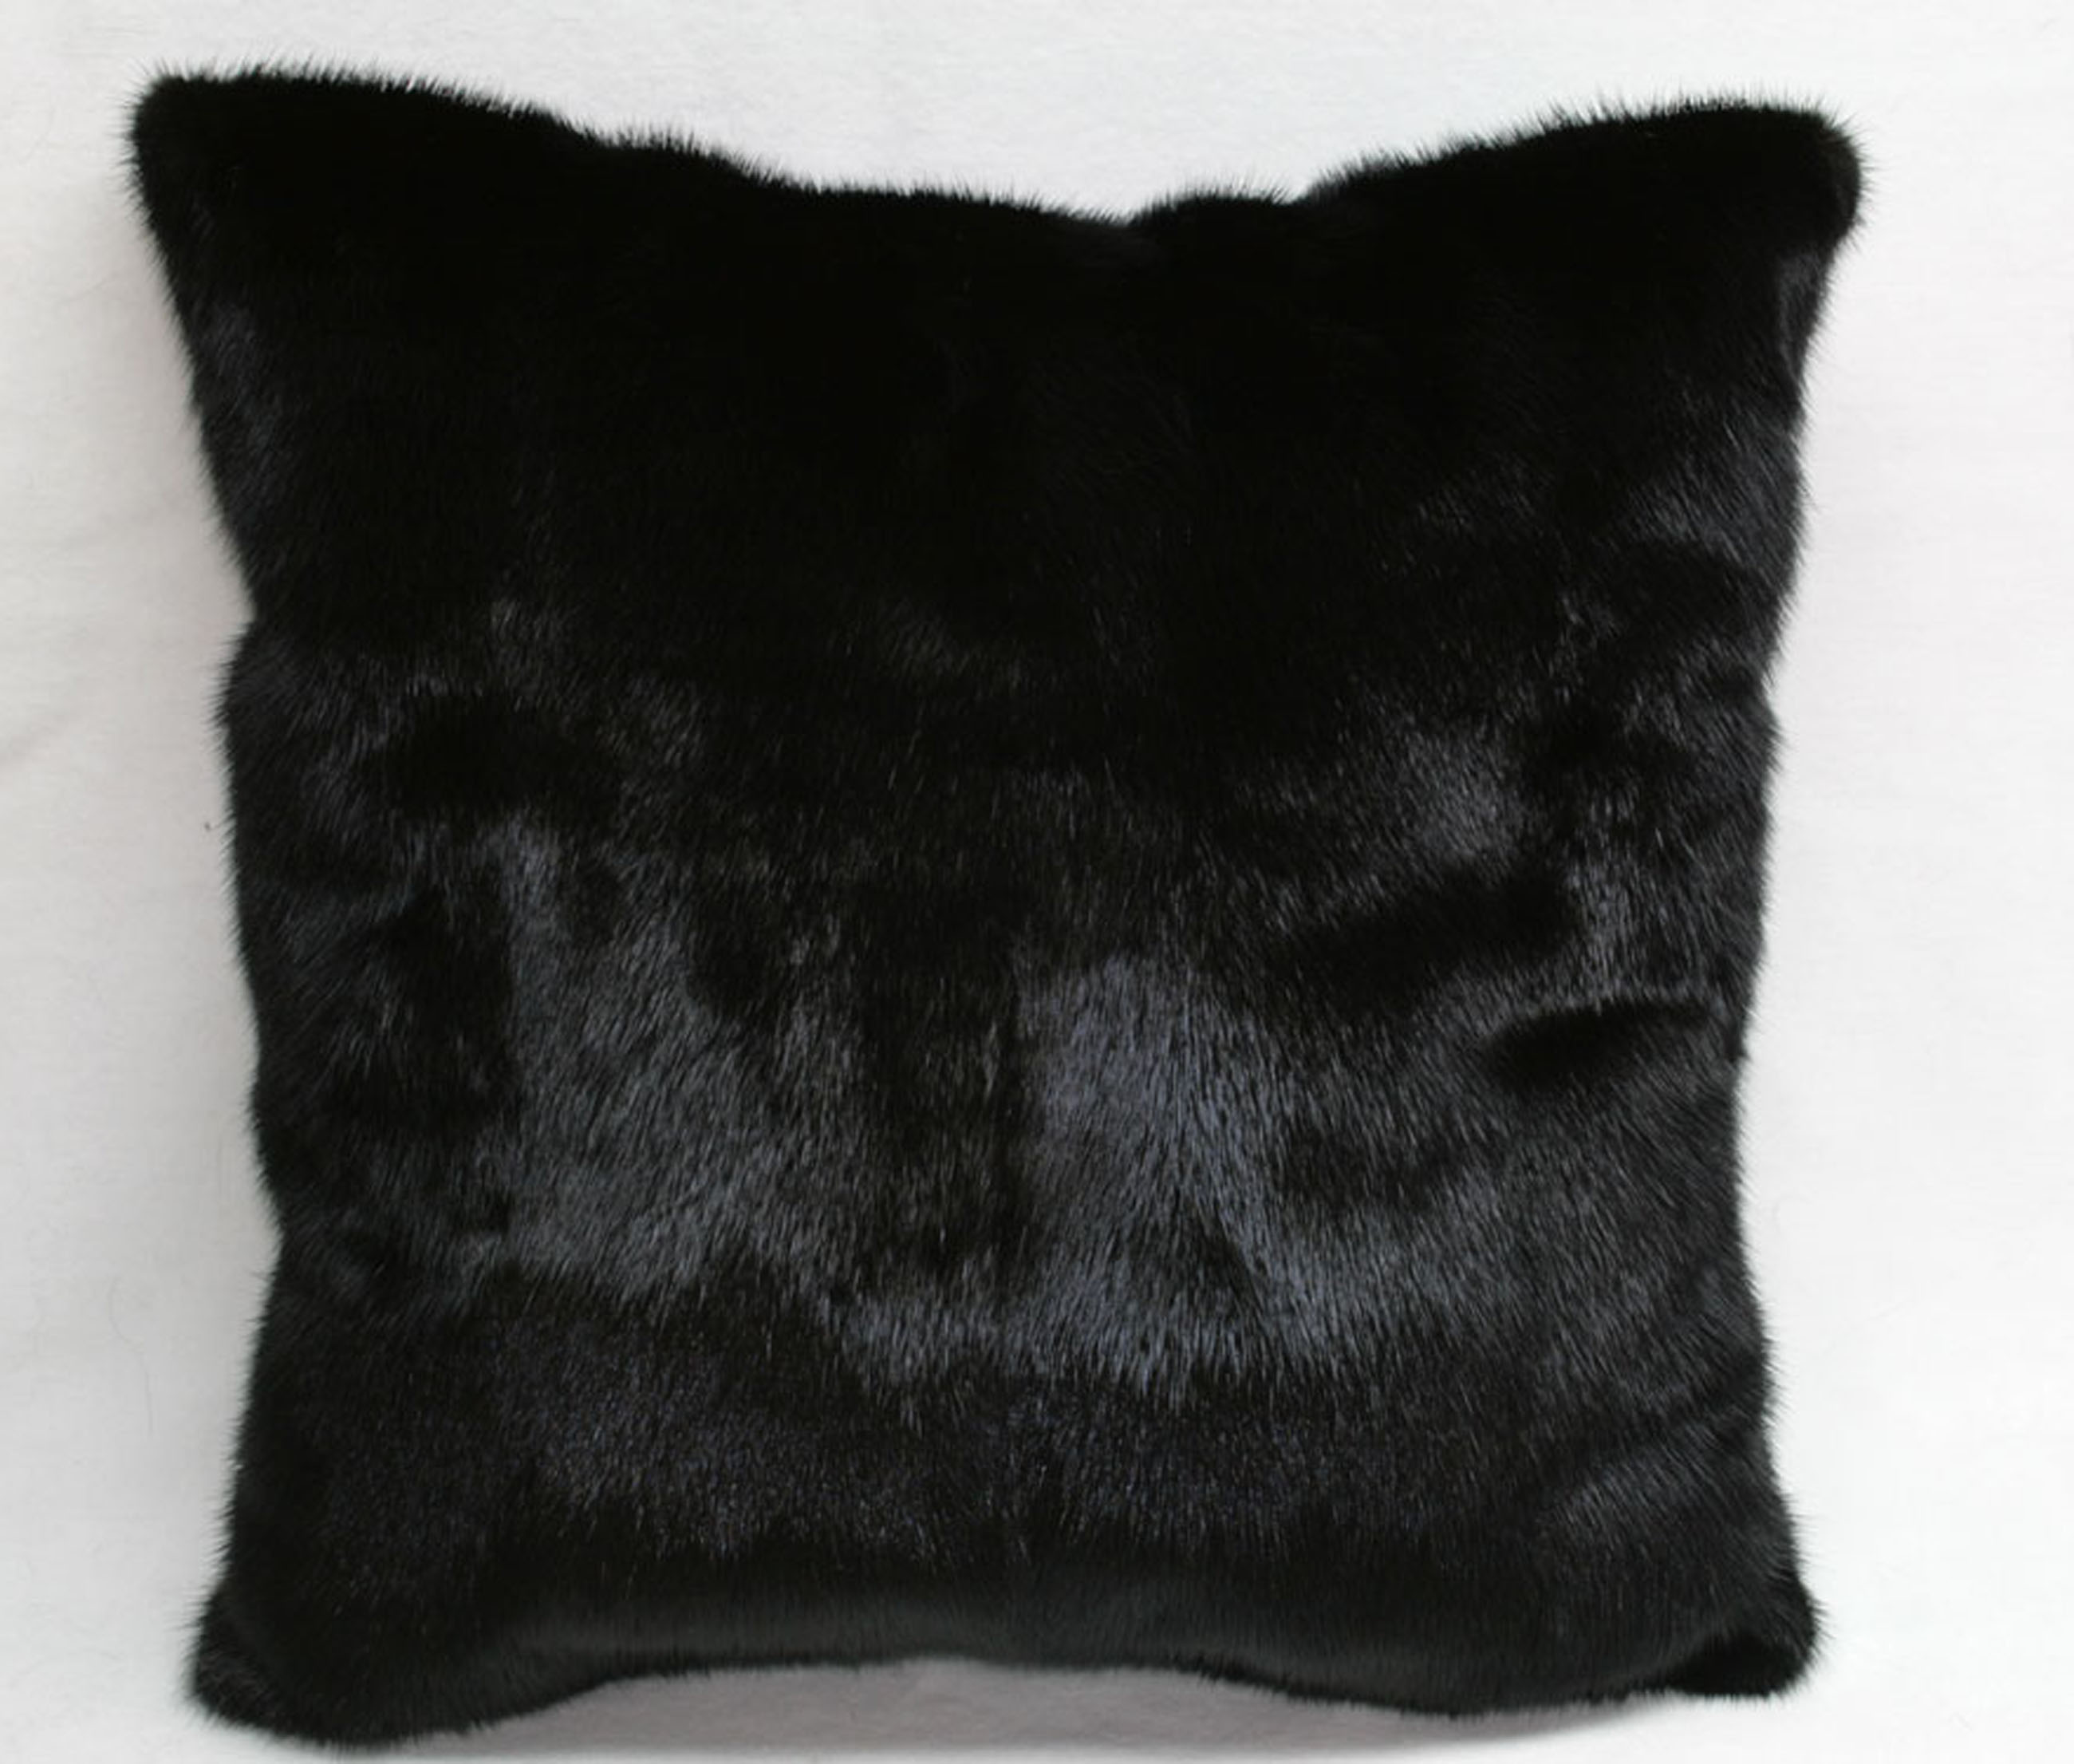 Mink fur pillow - fur on both sides